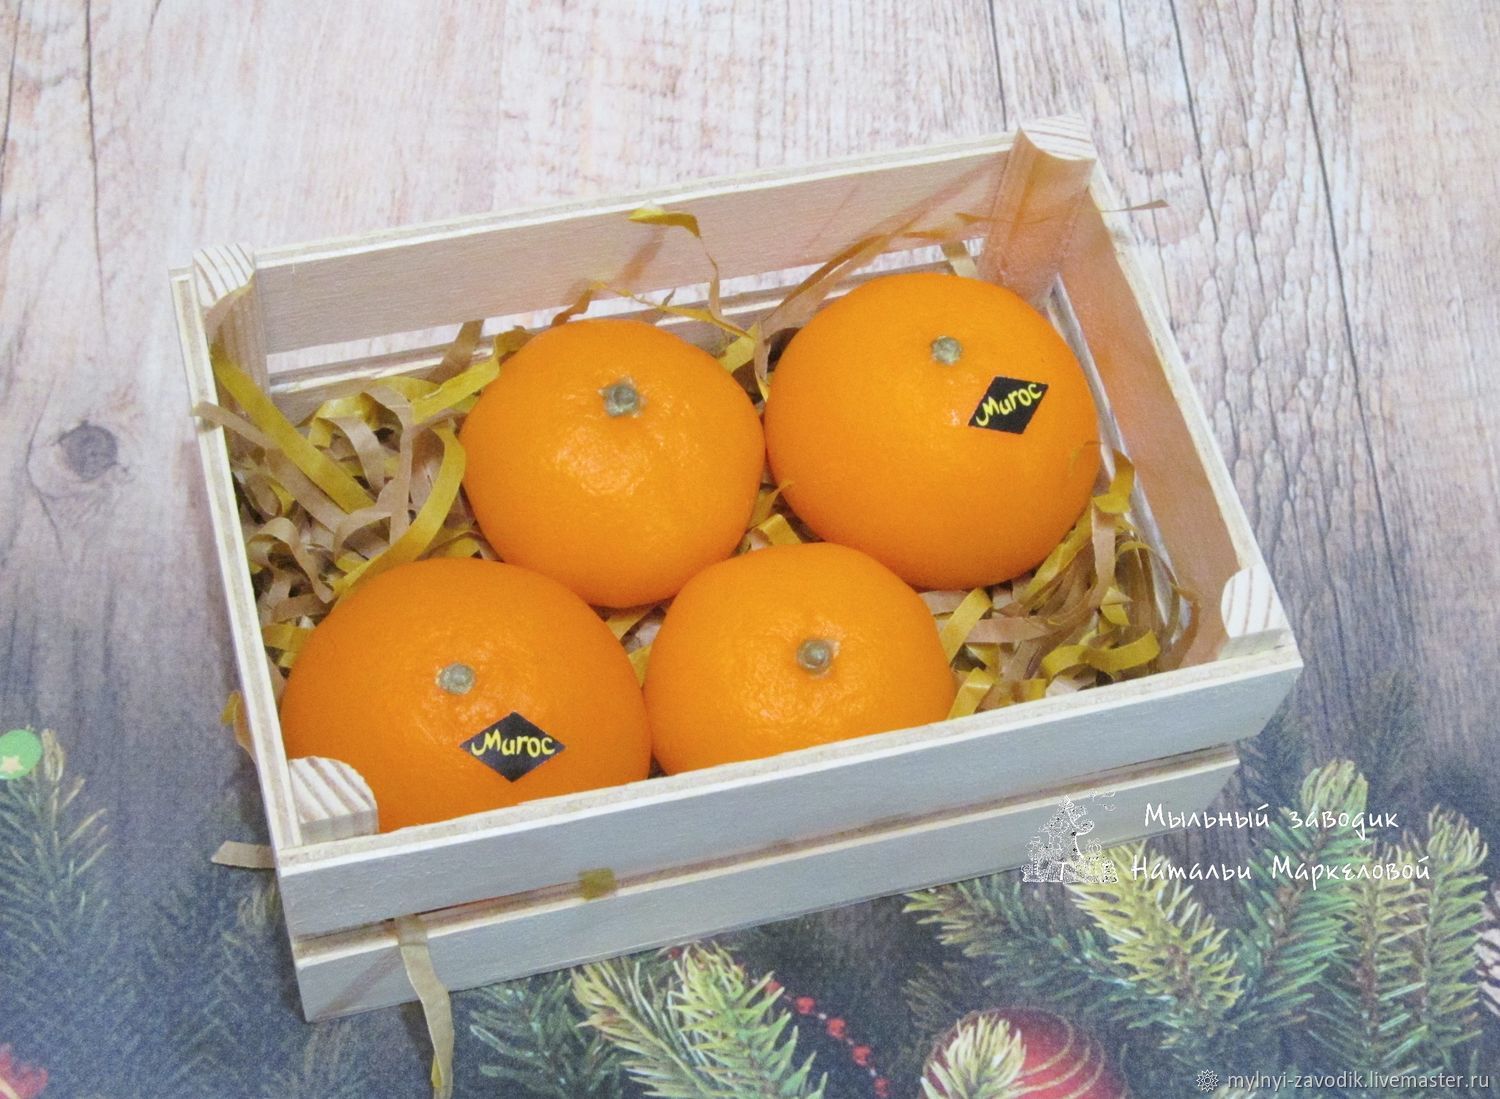 1 ящик мандарин. Ящик с мандаринами. Ящик апельсинов. Коробка с мандаринами. Ящик с апельсинами.